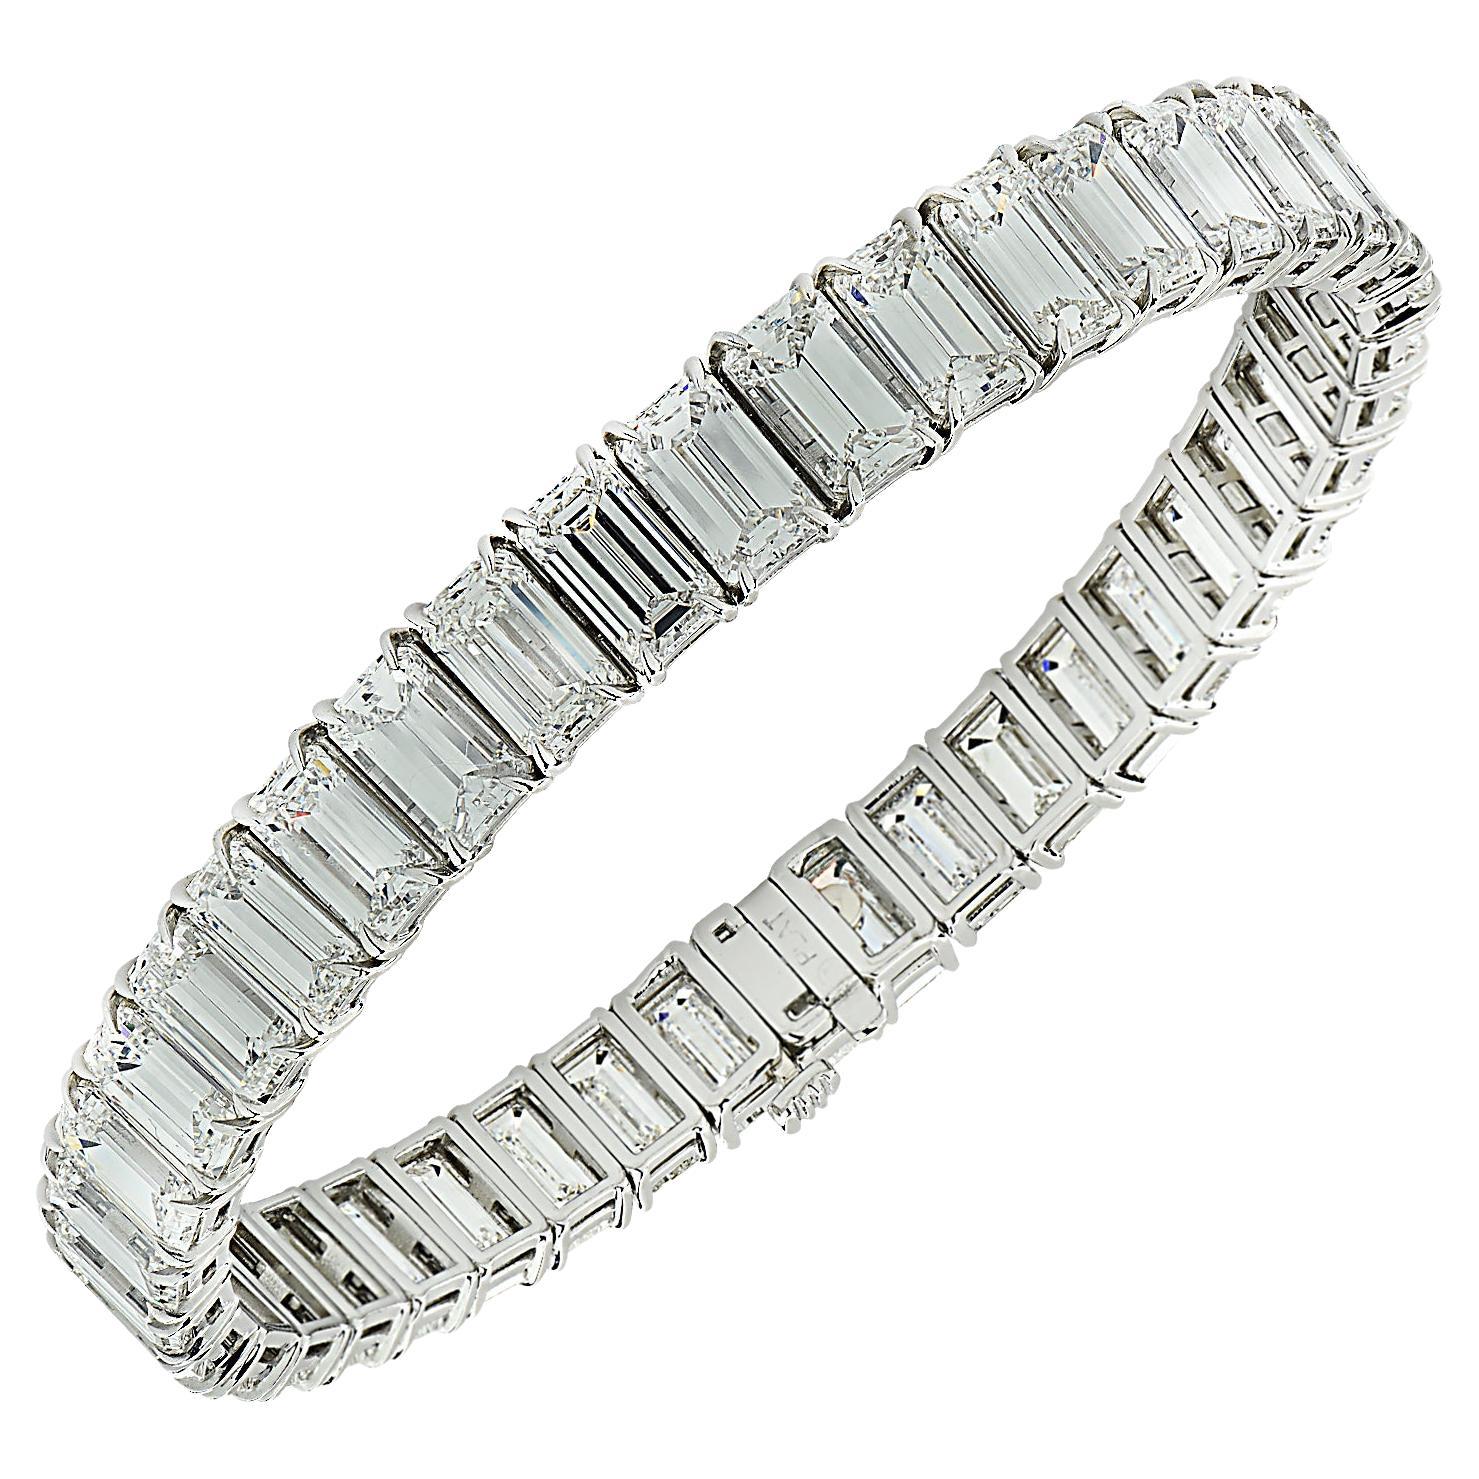 Vivid Diamonds 31.9 Carat Emerald Cut Diamond Bracelet